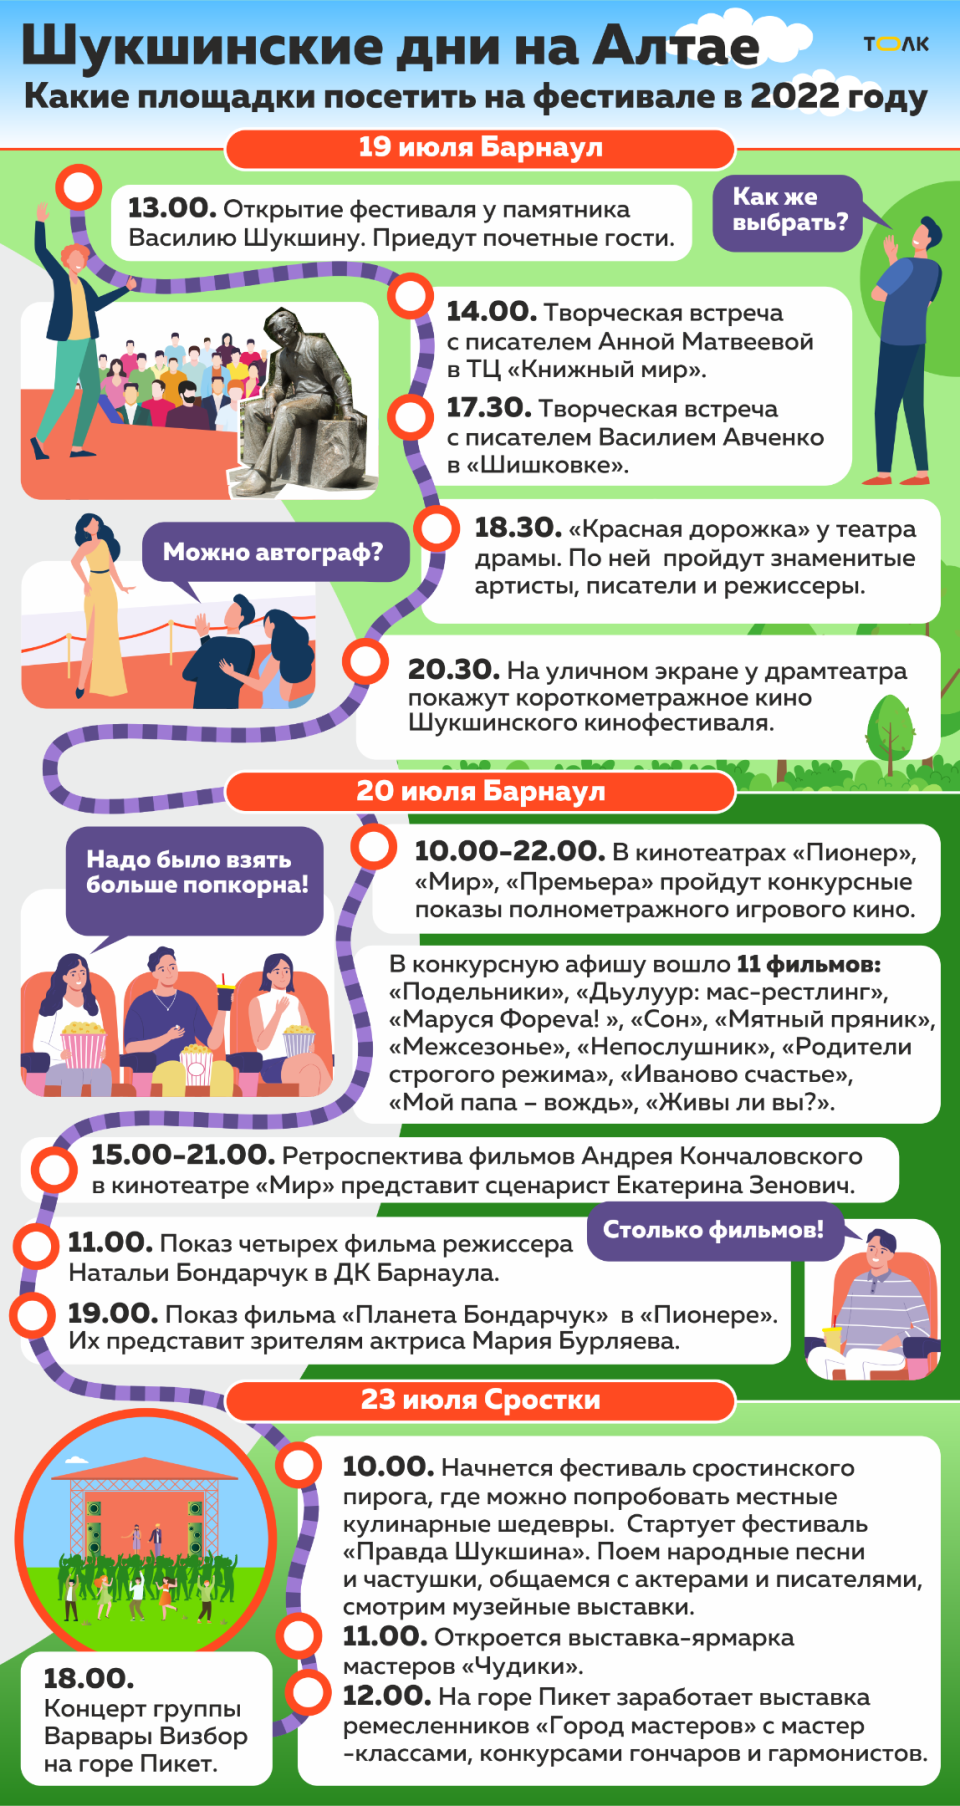 Шукшинские дни на Алтае в 2022 году. Инфографика